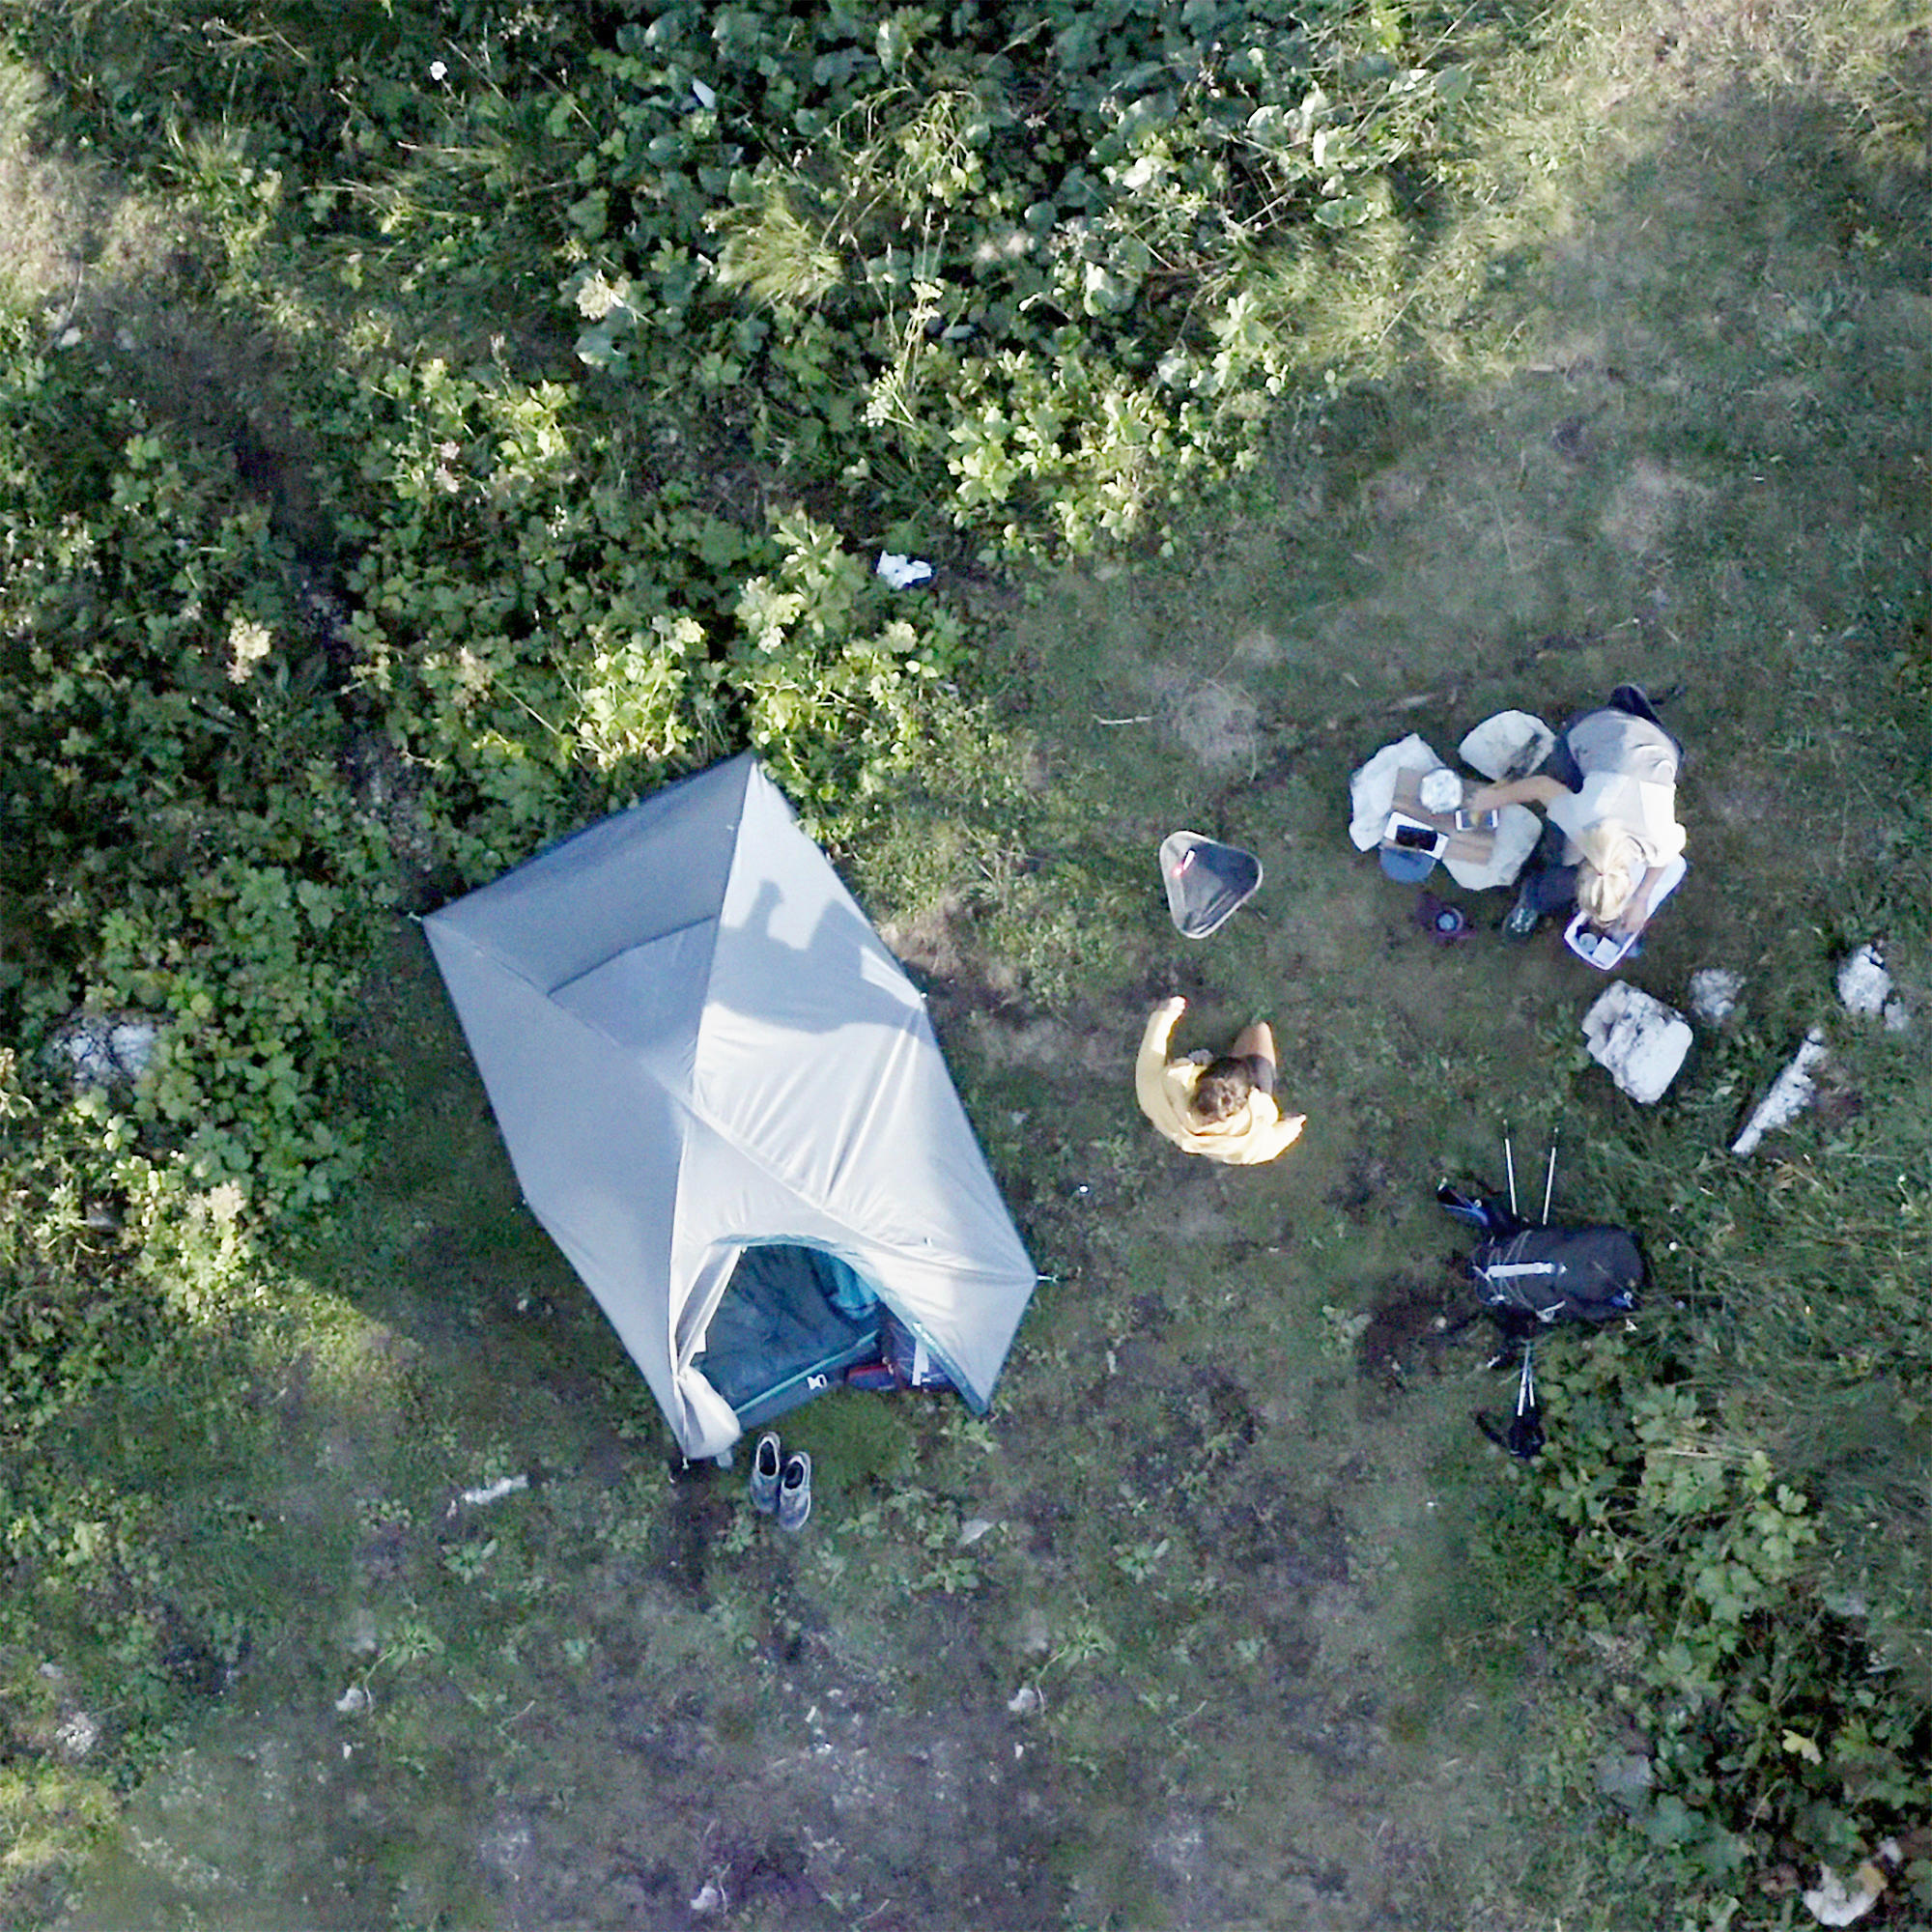 Tente de camping 2 places - MH 100 - QUECHUA